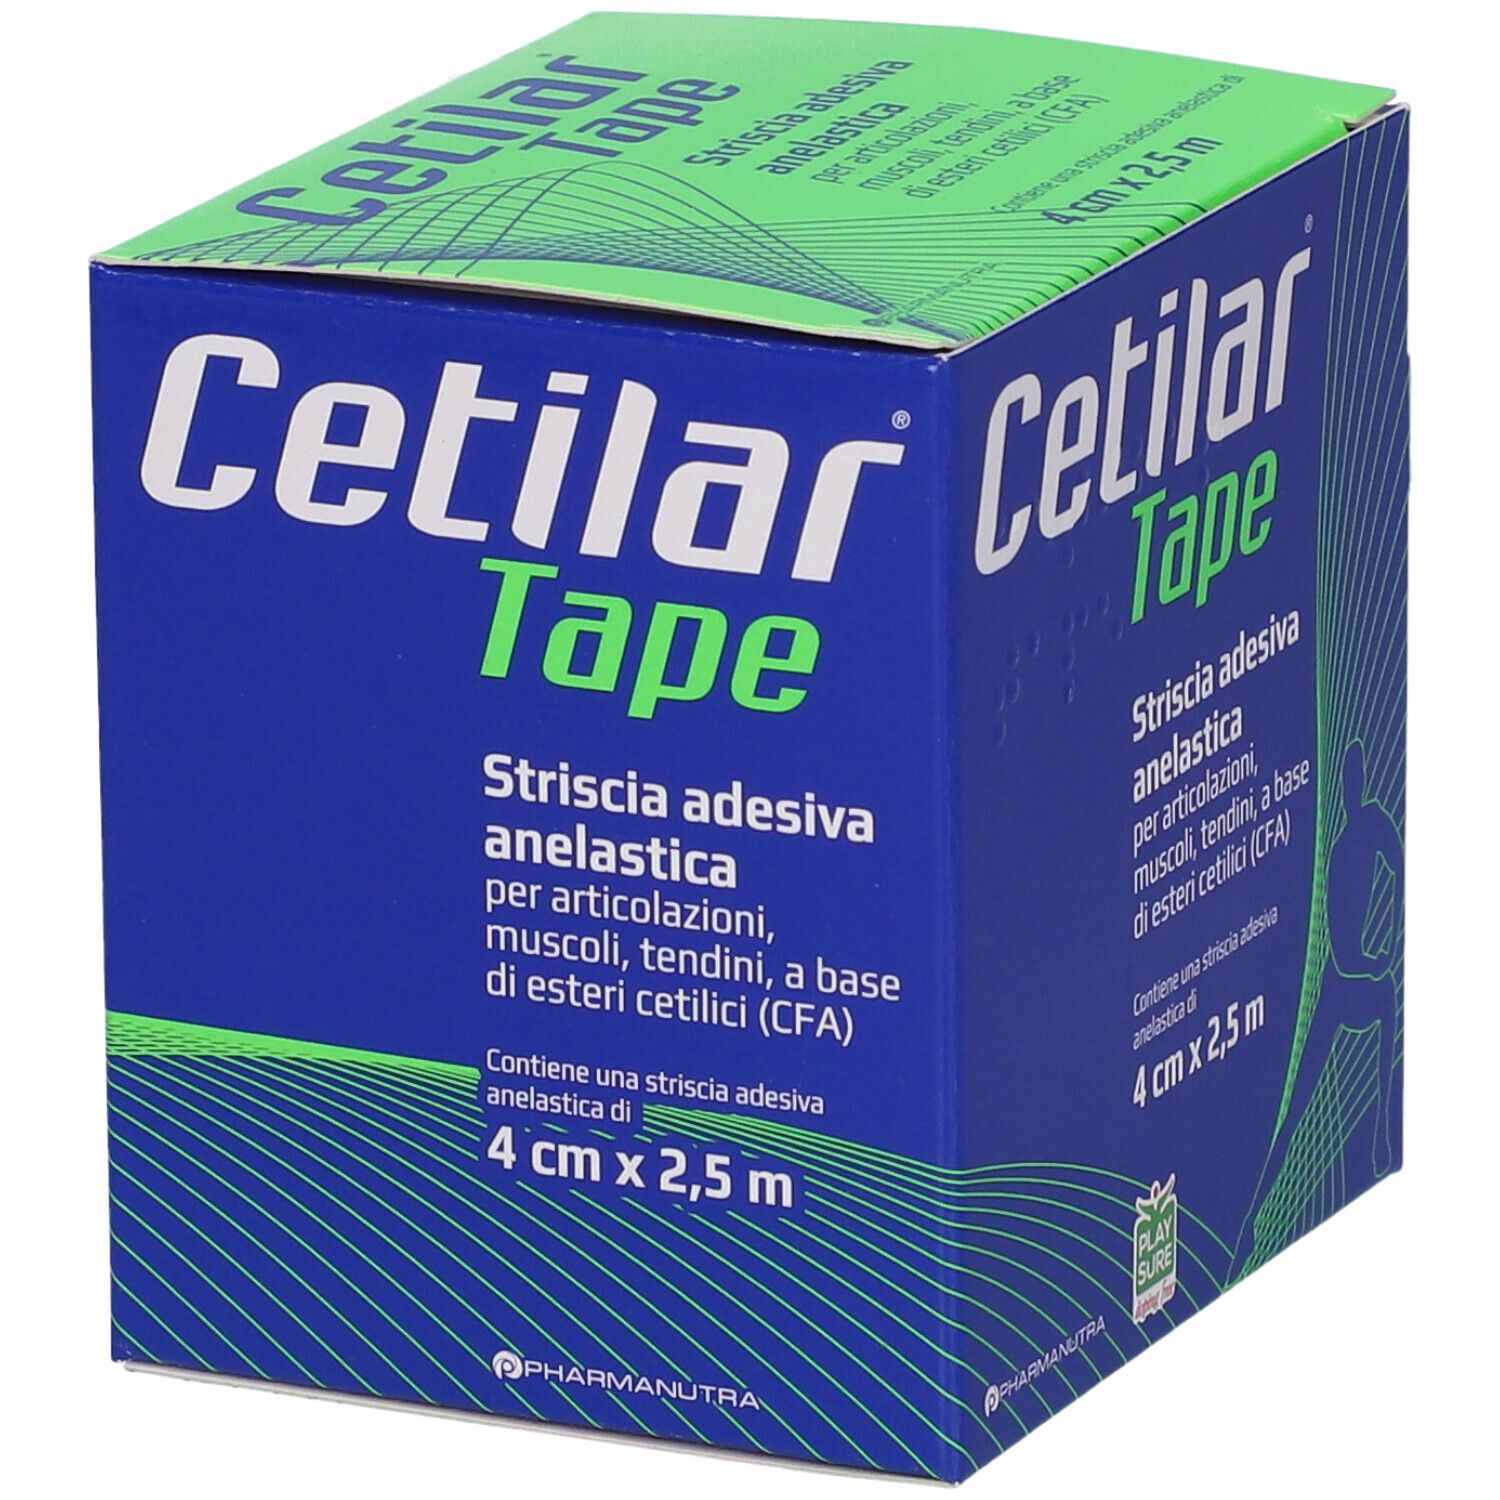 Cetilar® Tape